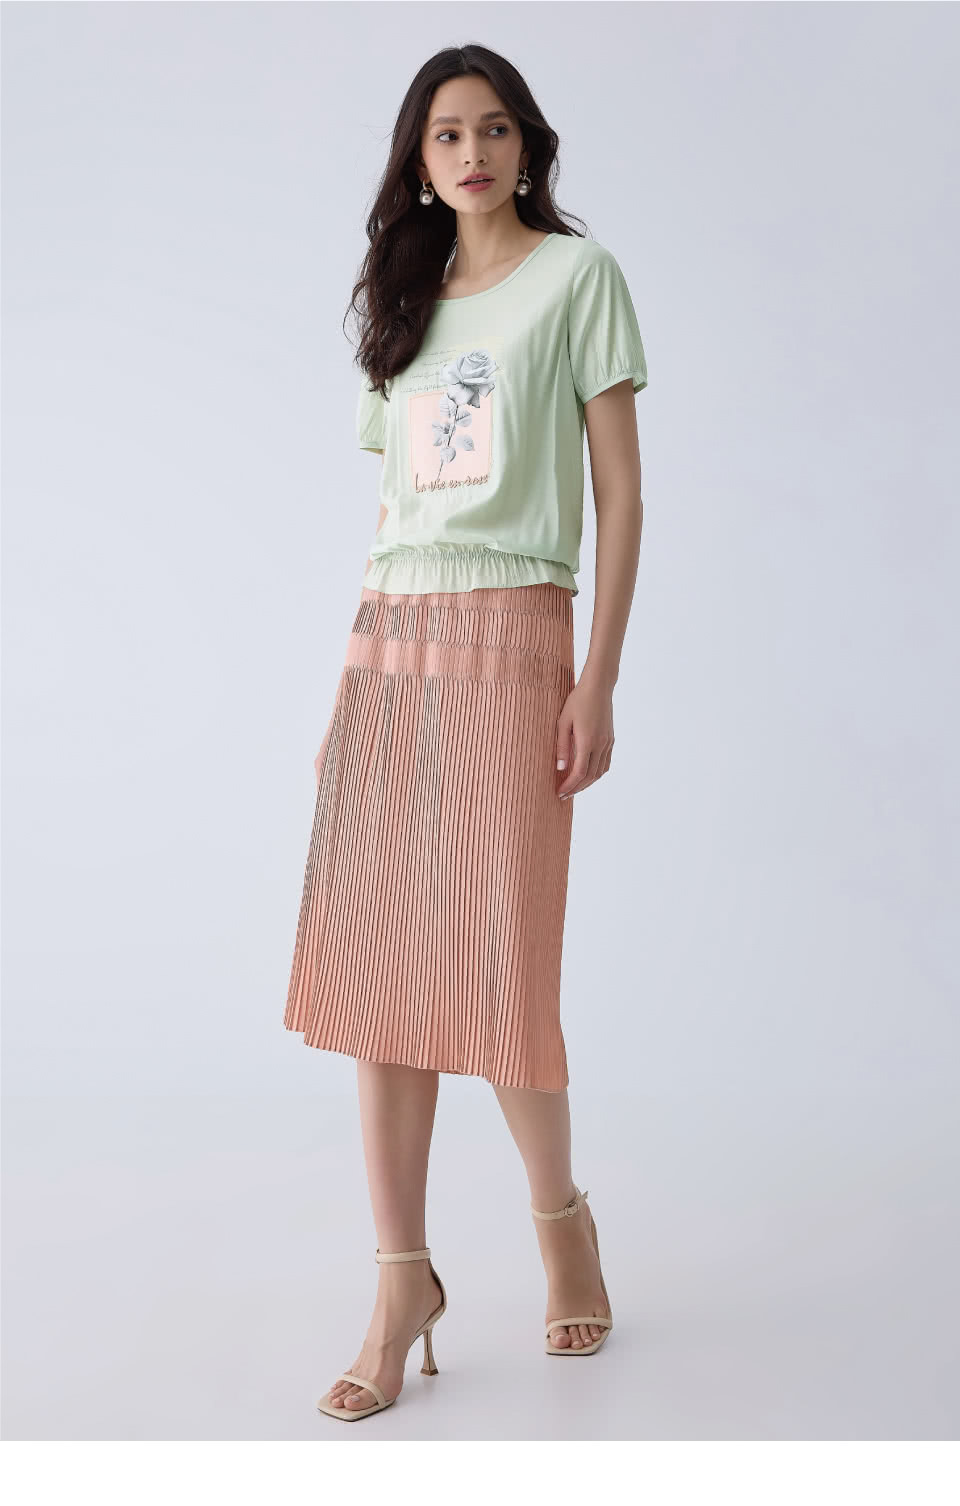 ILEY 伊蕾 玫瑰刺繡貼布造型上衣(淺綠色；M-XL；12